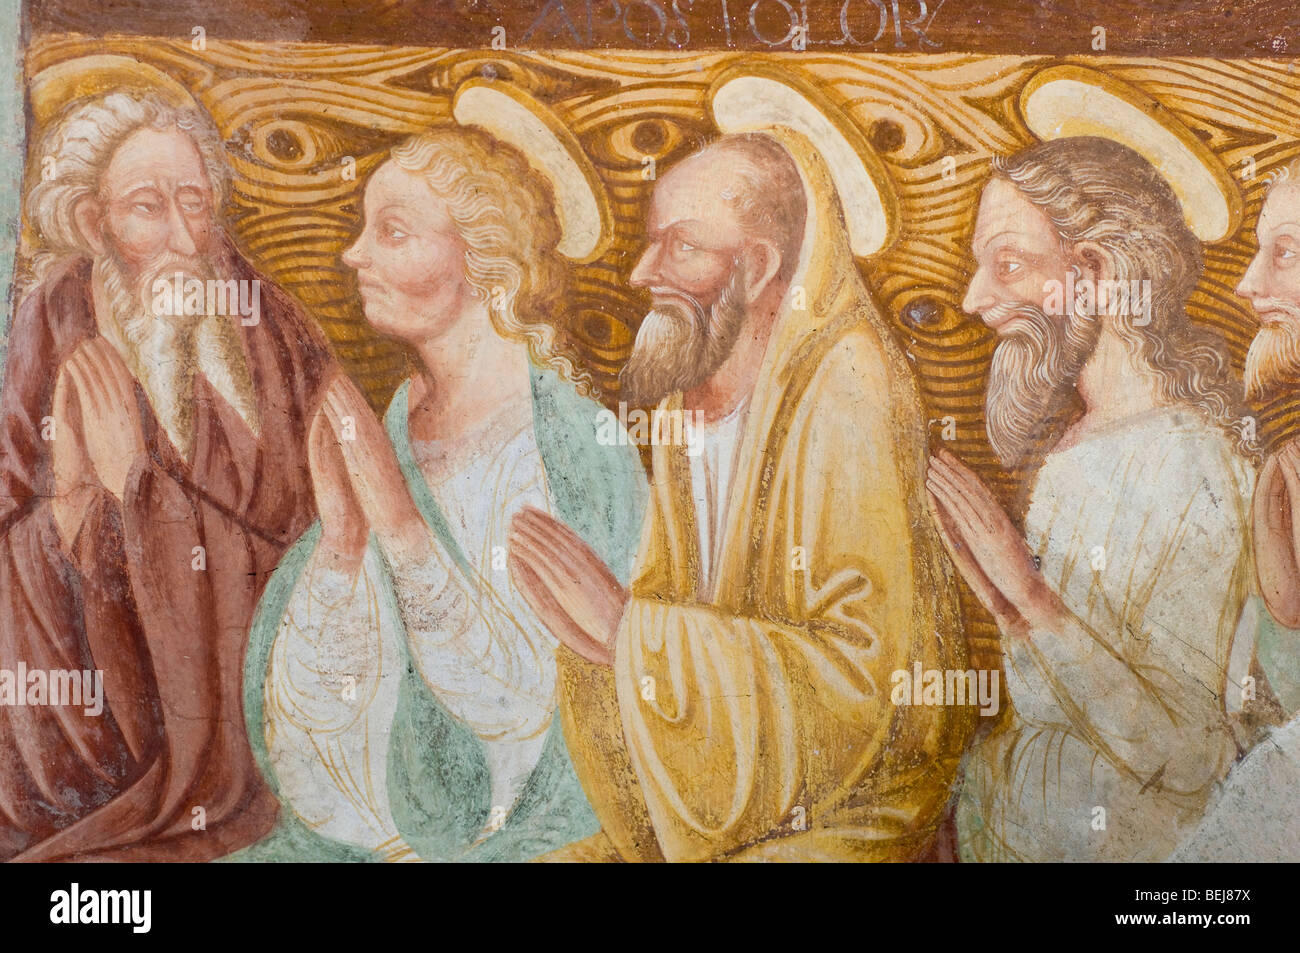 Frescoes, Boario Terme, Lombardy, Italy Stock Photo